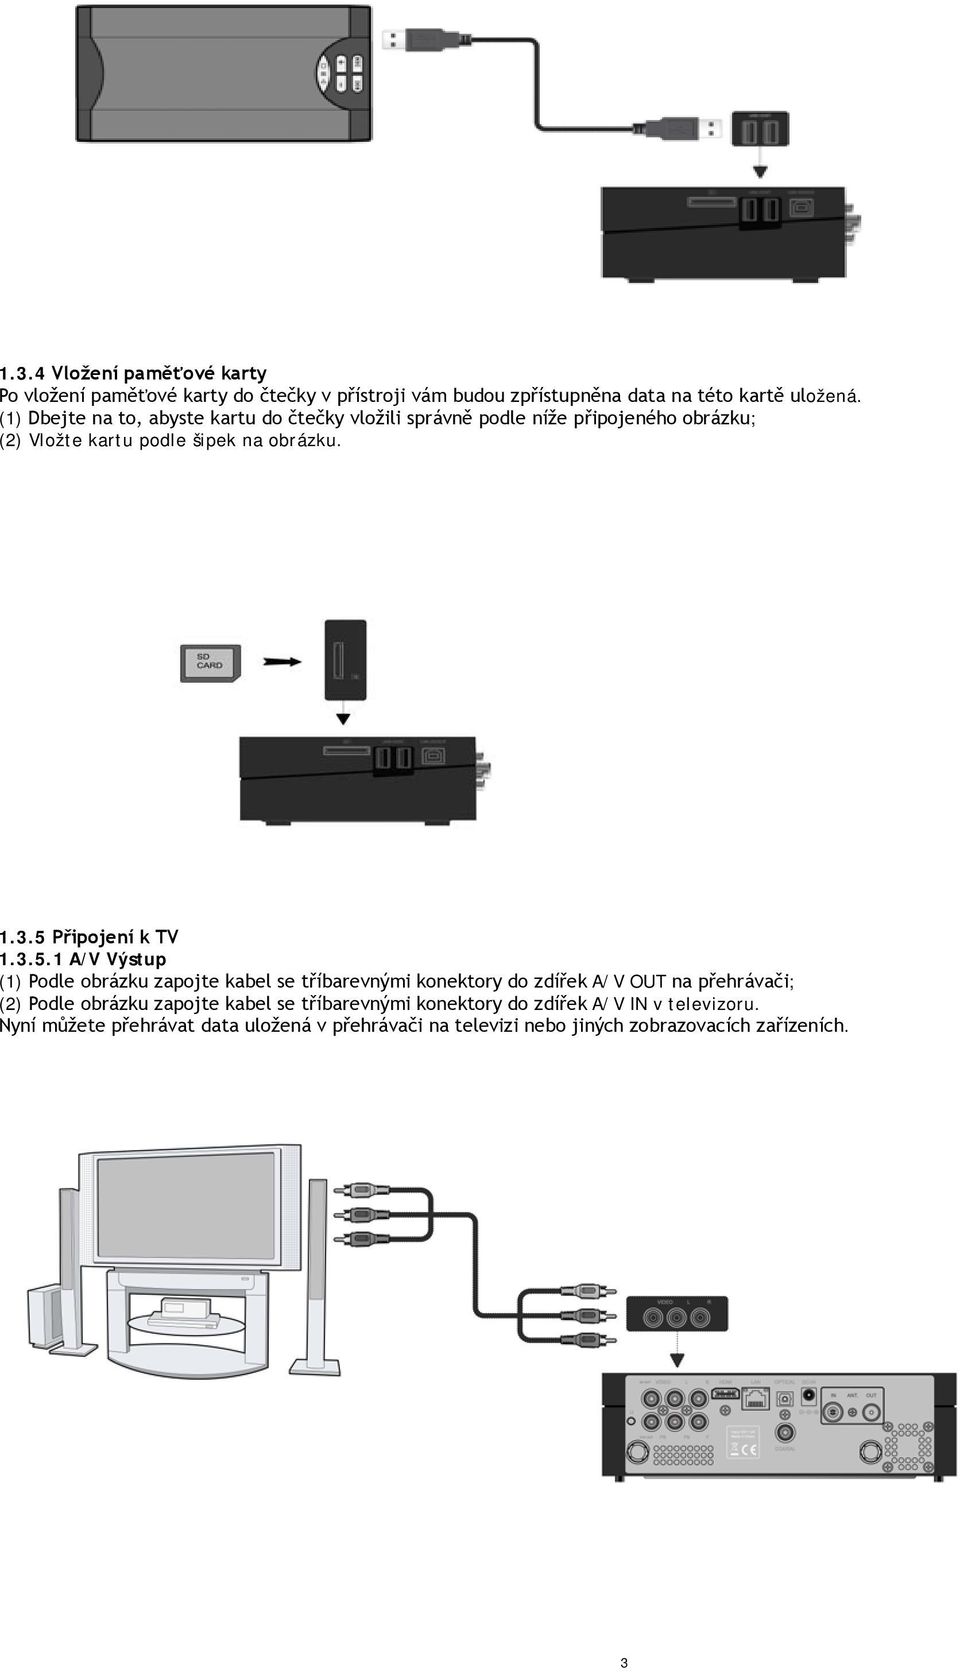 5 Připojení k TV 1.3.5.1 A/V Výstup (1) Podle obrázku zapojte kabel se tříbarevnými konektory do zdířek A/V OUT na přehrávači; (2) Podle obrázku